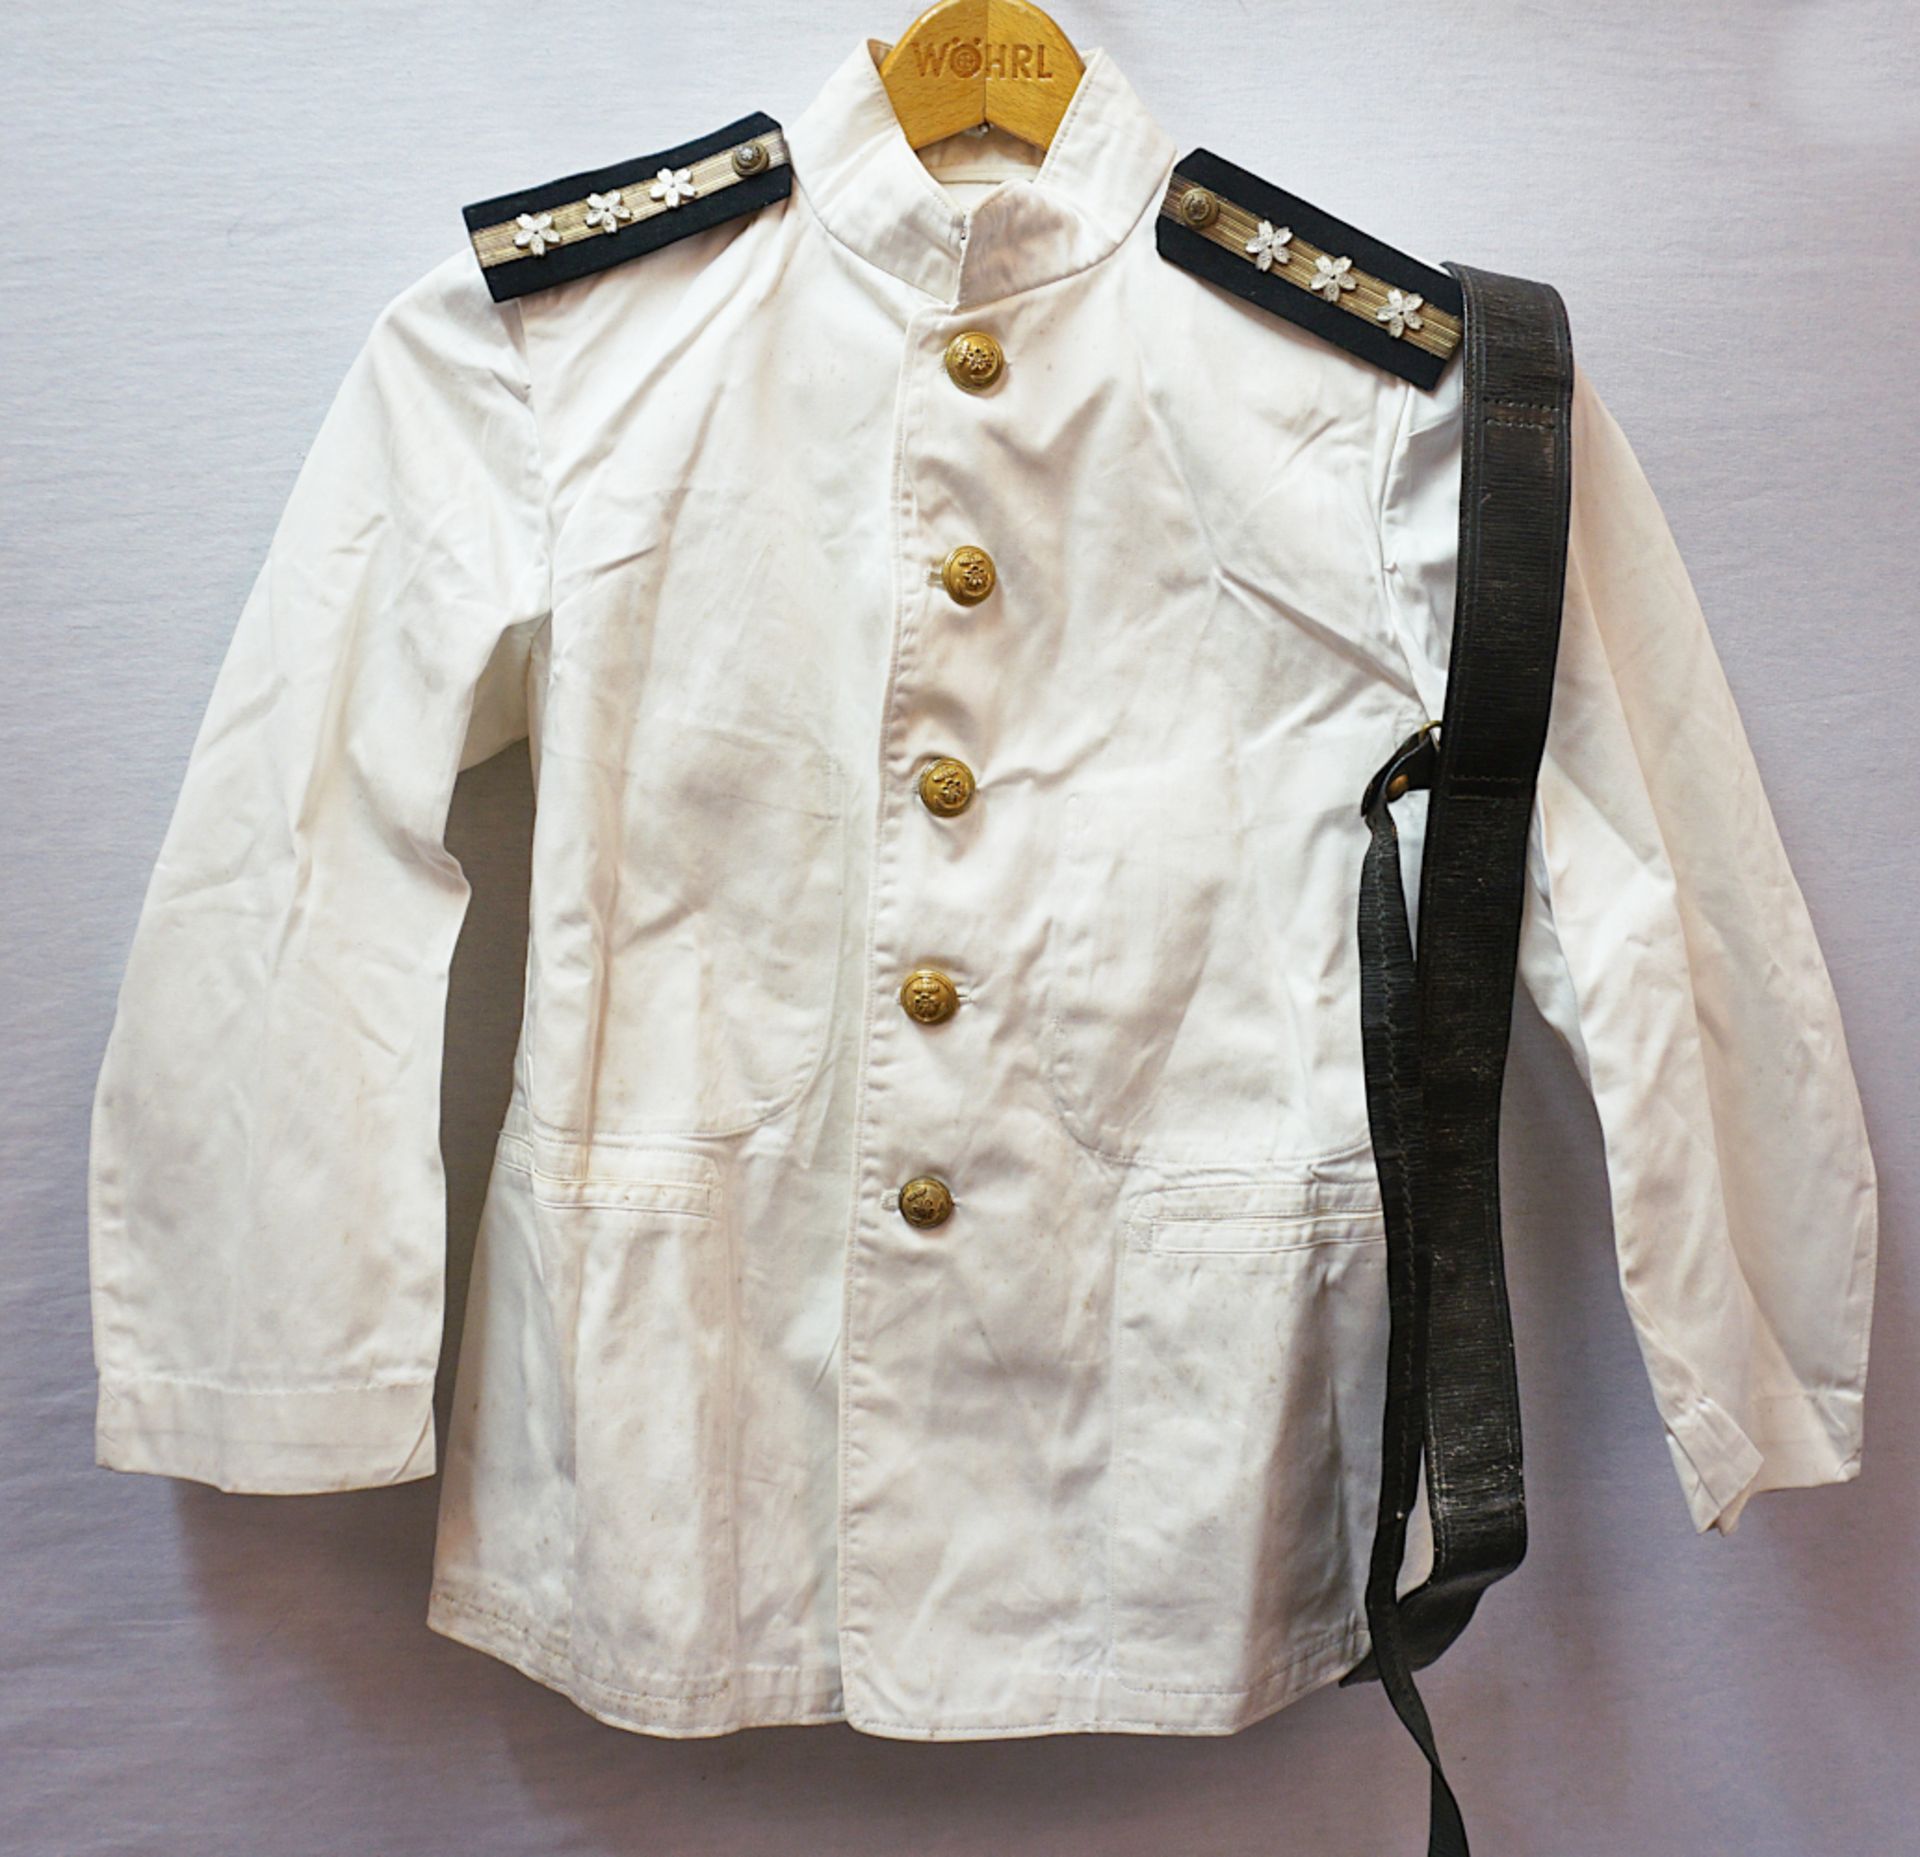 1 Sommeruniform für einen sōchō (Oberfeldwebel) der kaiserlichen japanischen Marine, 2. WK: